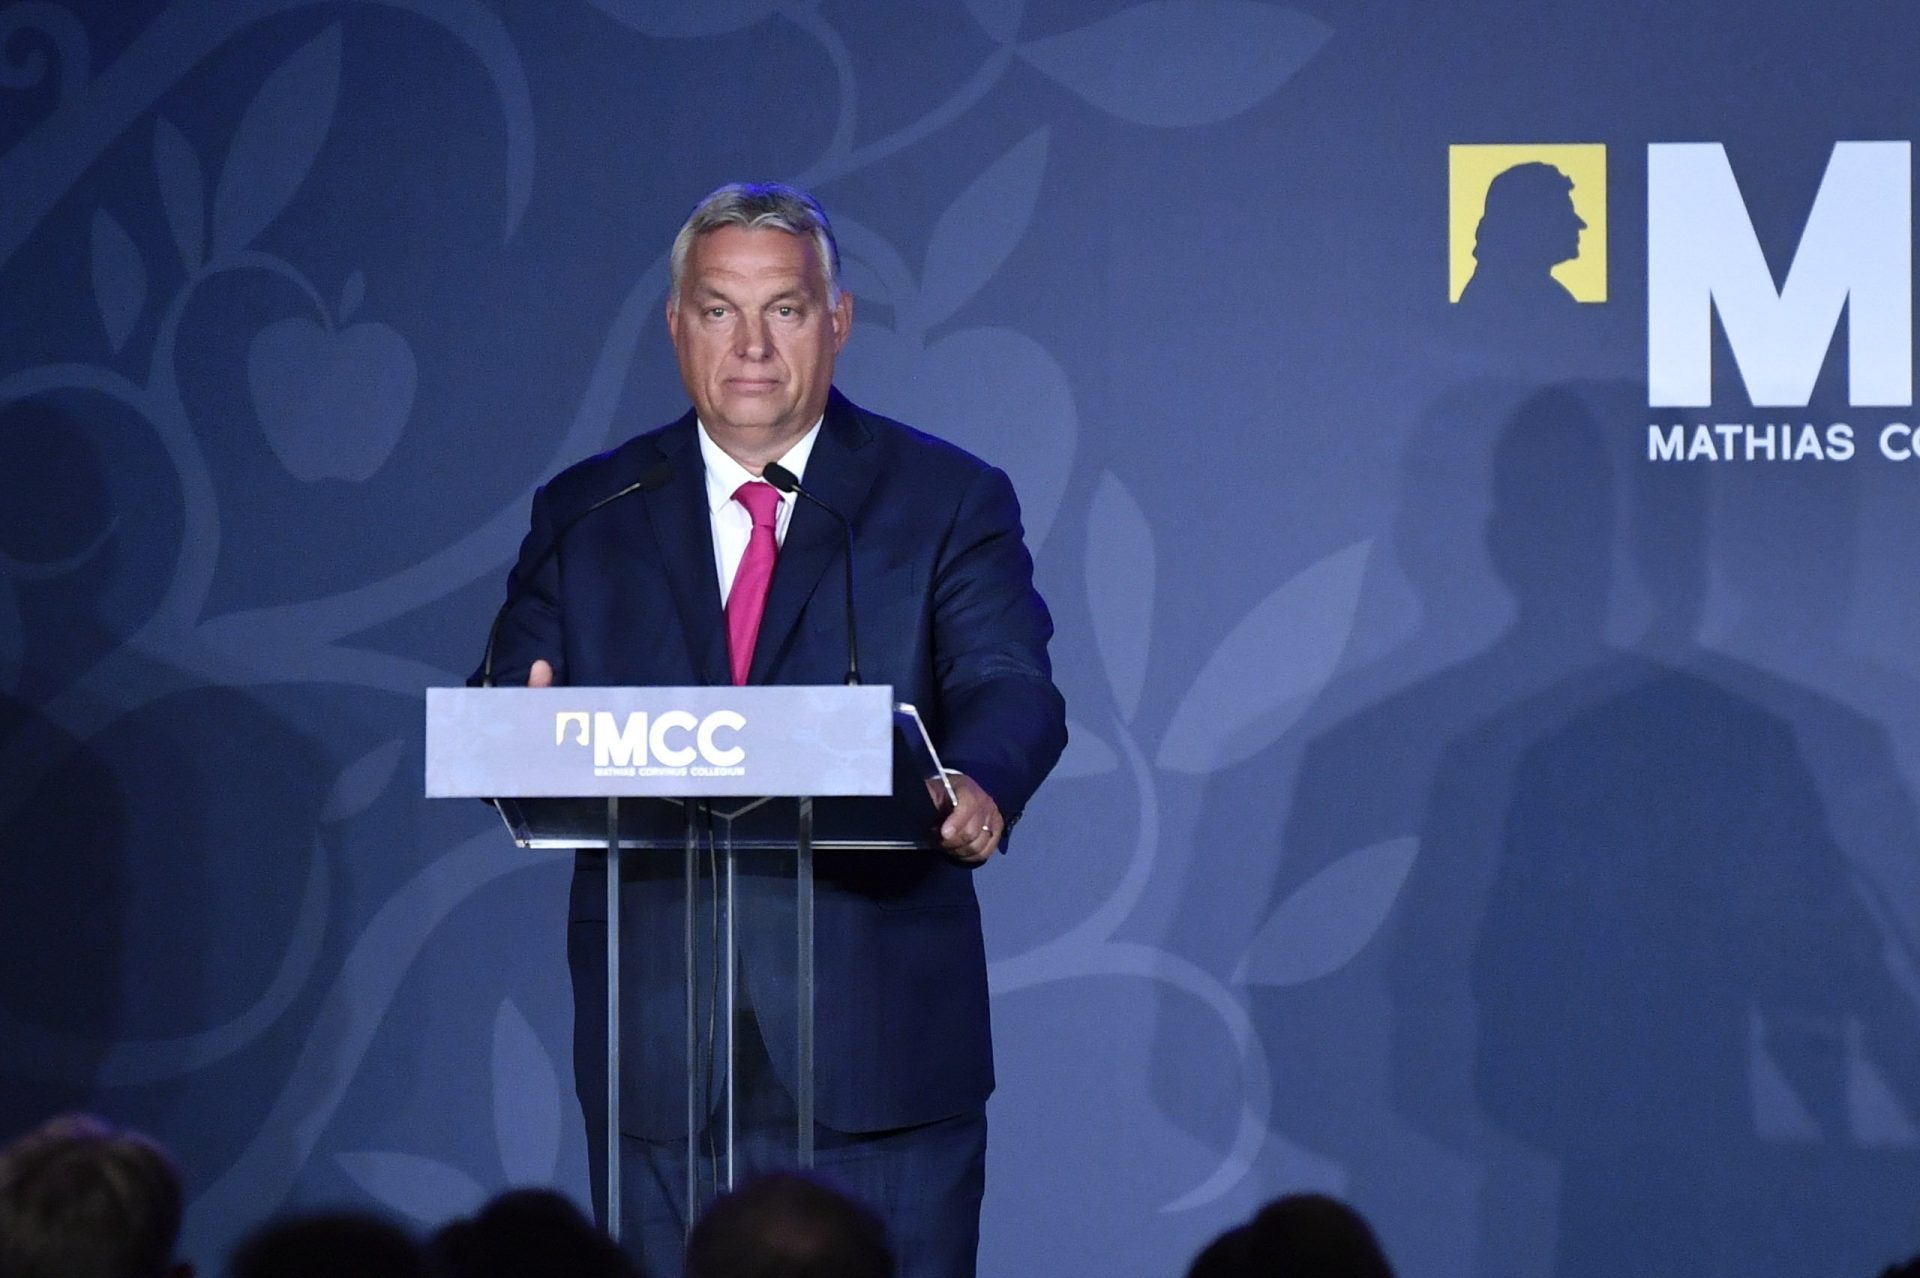 Orbán: Balkans peace, stability key for Hungary